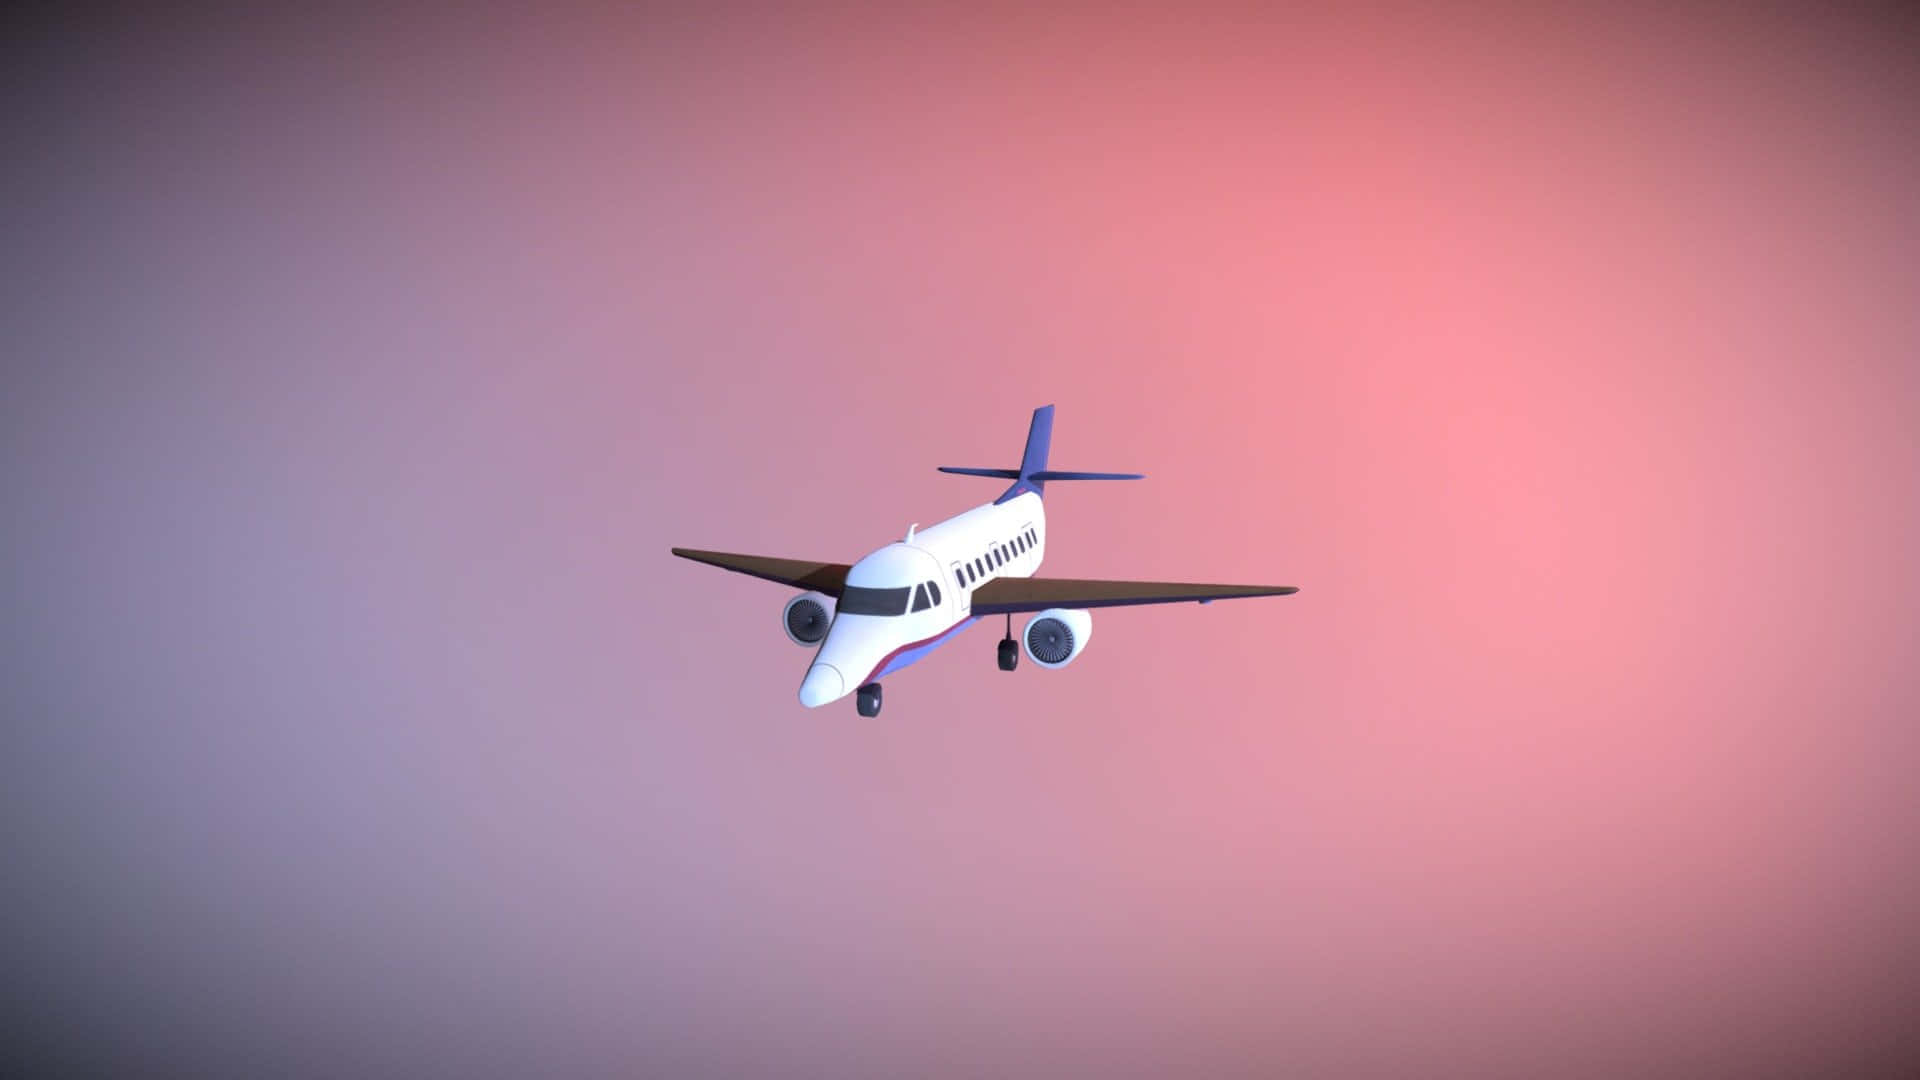 Erhelledeinen Nächsten Flug - Fliege In Einem Pinkfarbenen Flugzeug Wallpaper